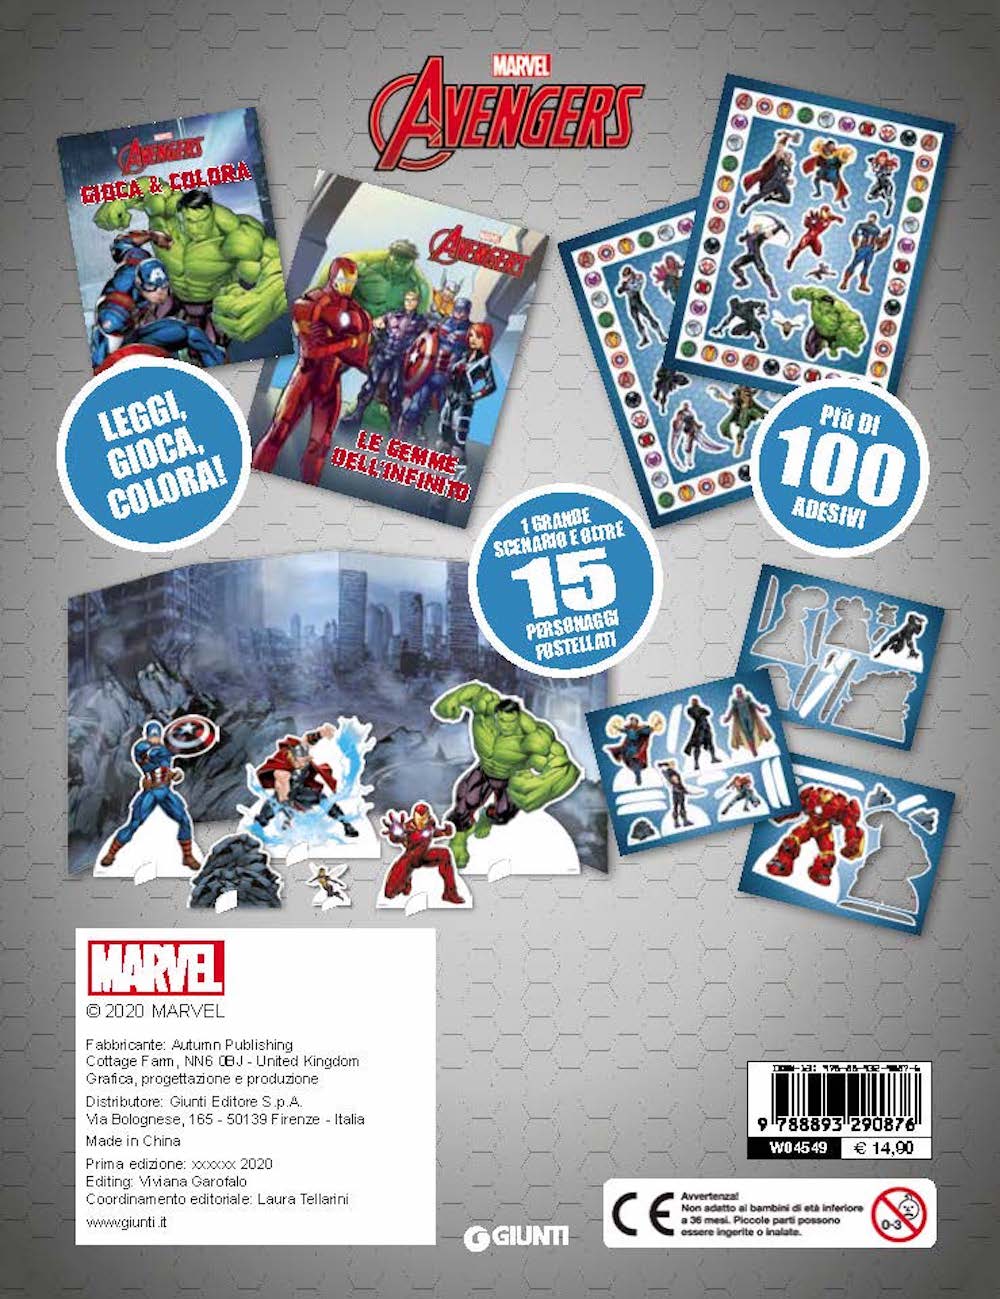 Marvel Avengers Storie di Latta::Leggi, gioca, colora